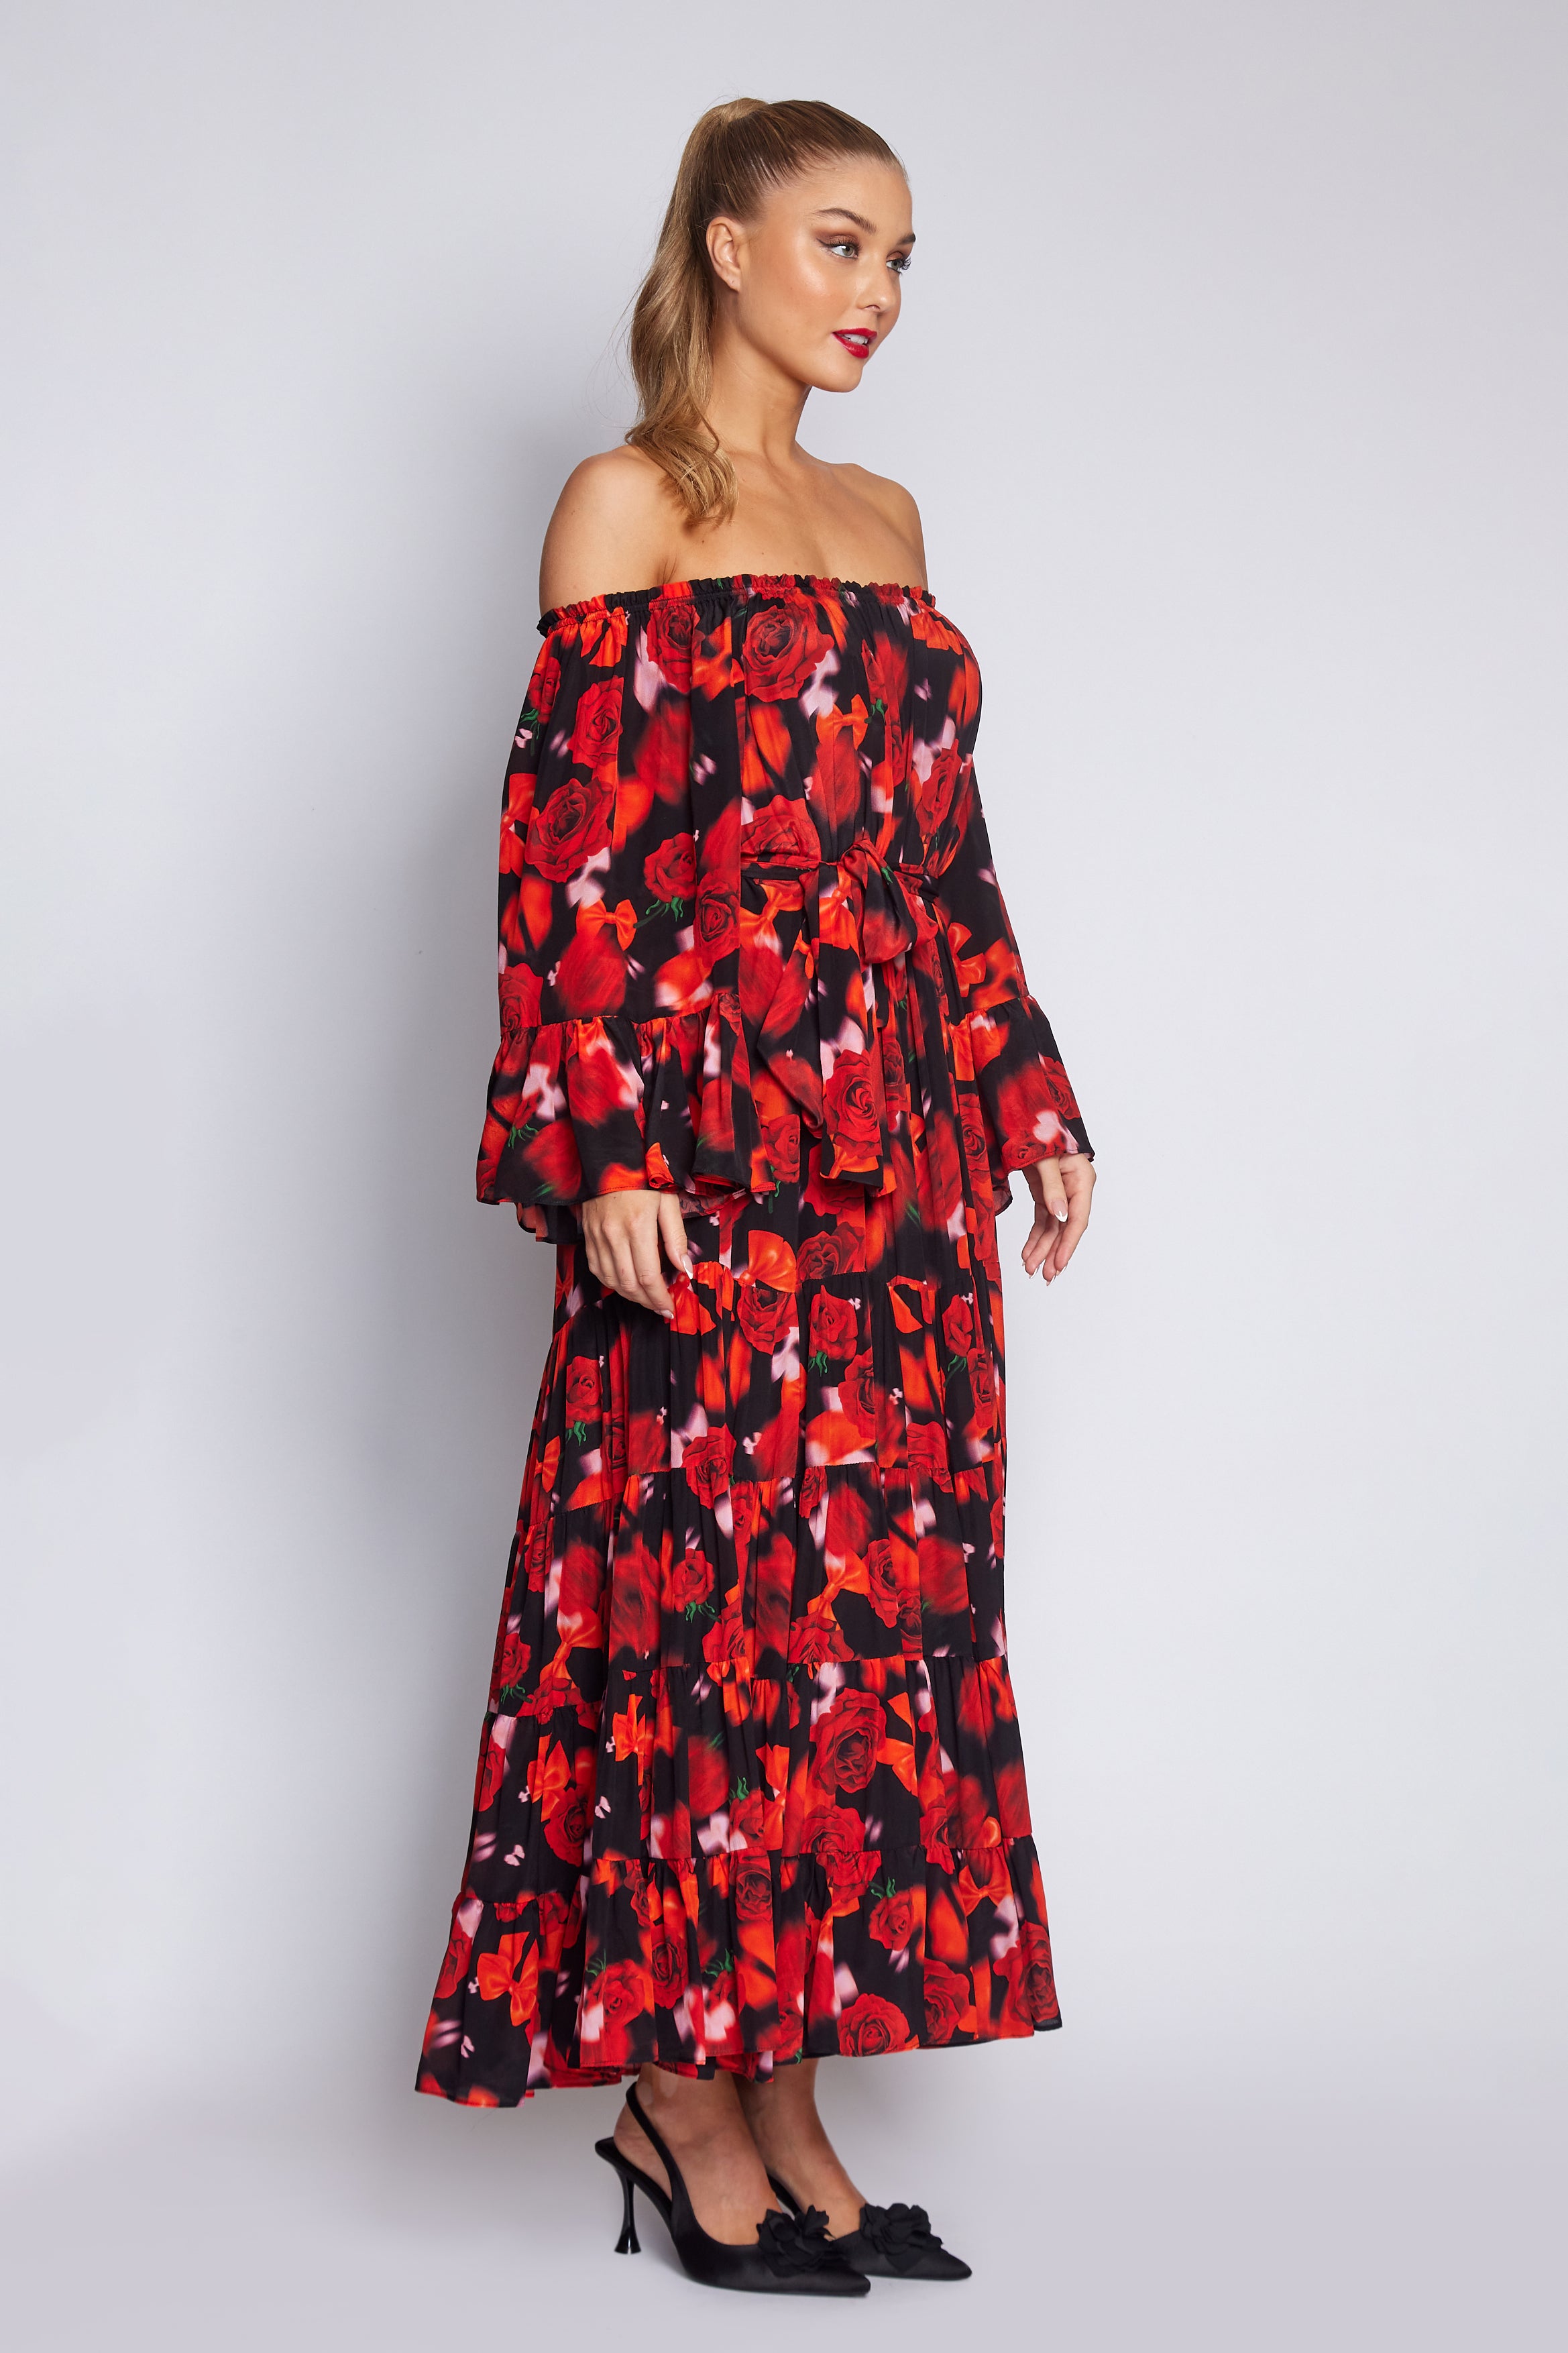 Red Rose Gypsy Dress